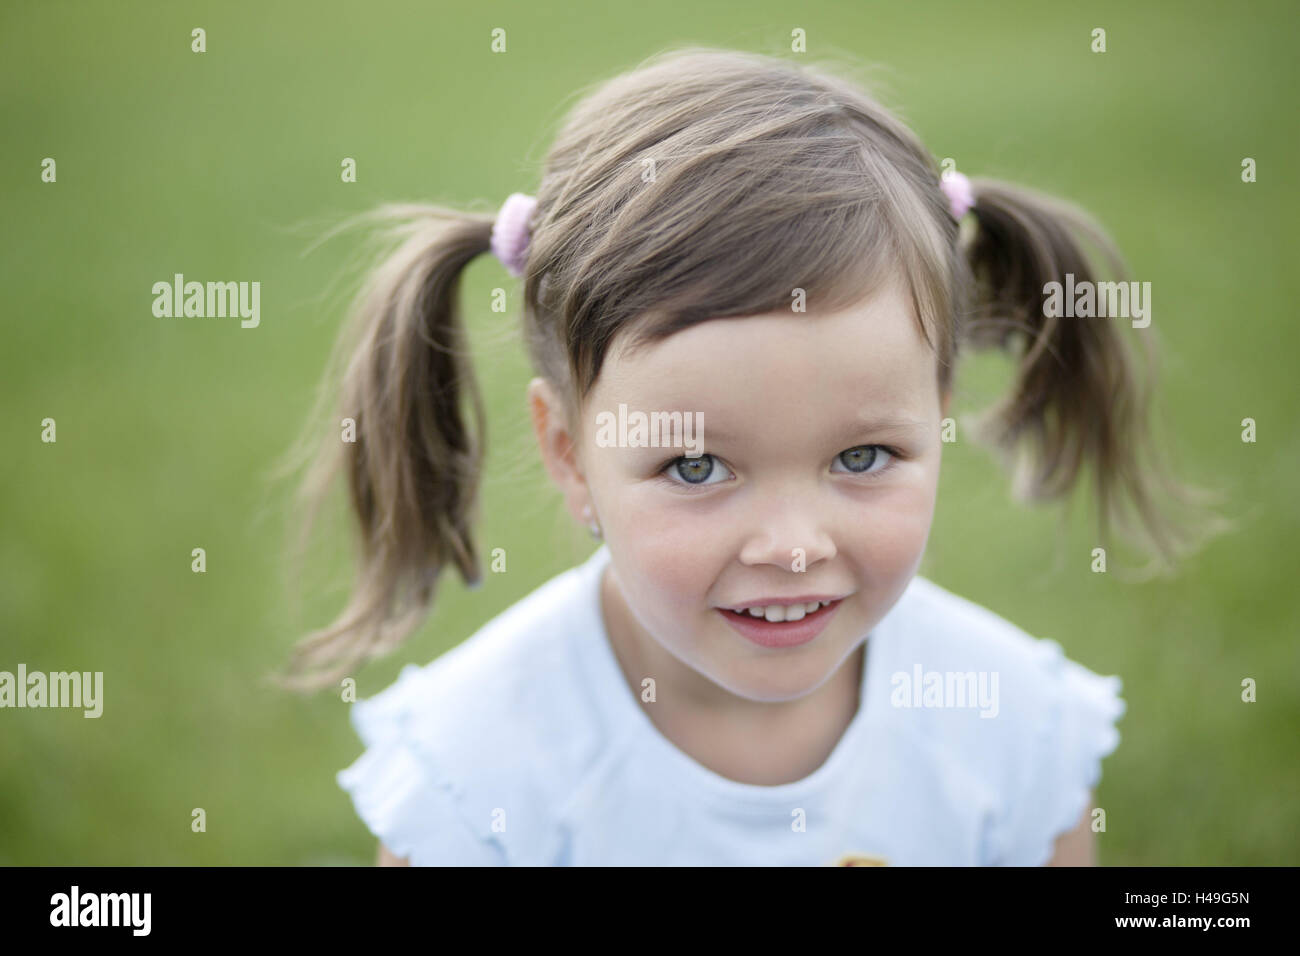 Enfant, fille, l'été, à l'extérieur, portrait, de l'enfance, de 4 à 6 ans, brunette, tresses, sourire, pré, jardin, légers, d'innocence, enfant, portrait Banque D'Images